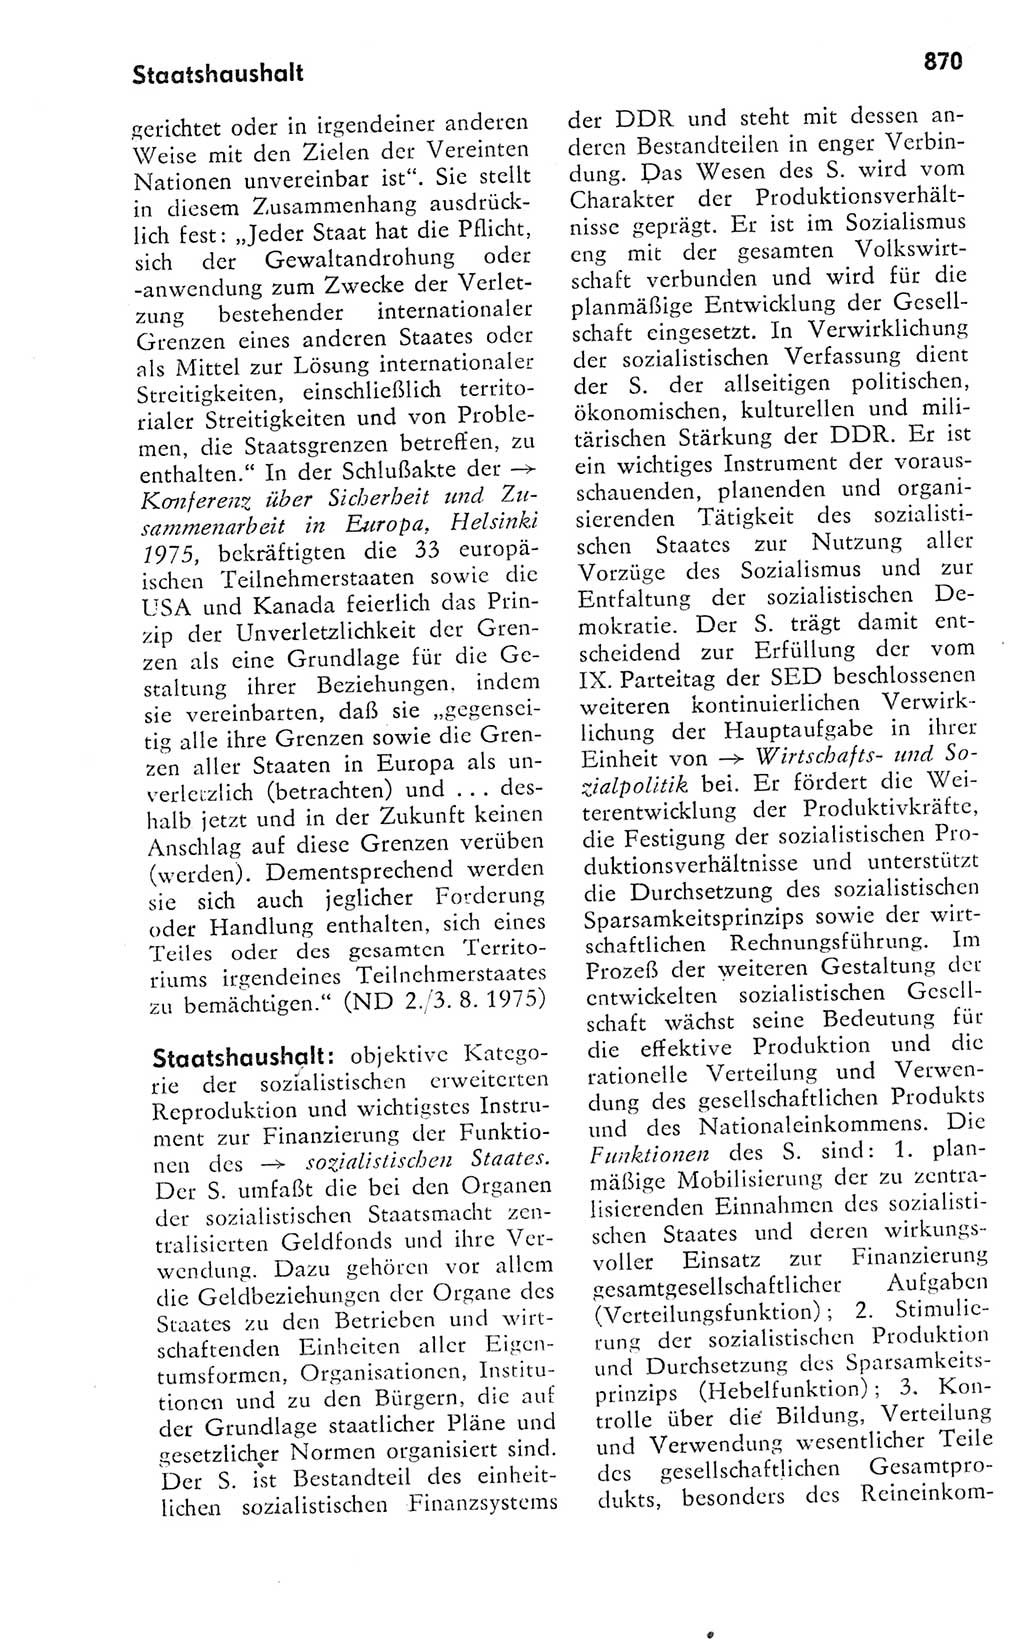 Kleines politisches Wörterbuch [Deutsche Demokratische Republik (DDR)] 1978, Seite 870 (Kl. pol. Wb. DDR 1978, S. 870)